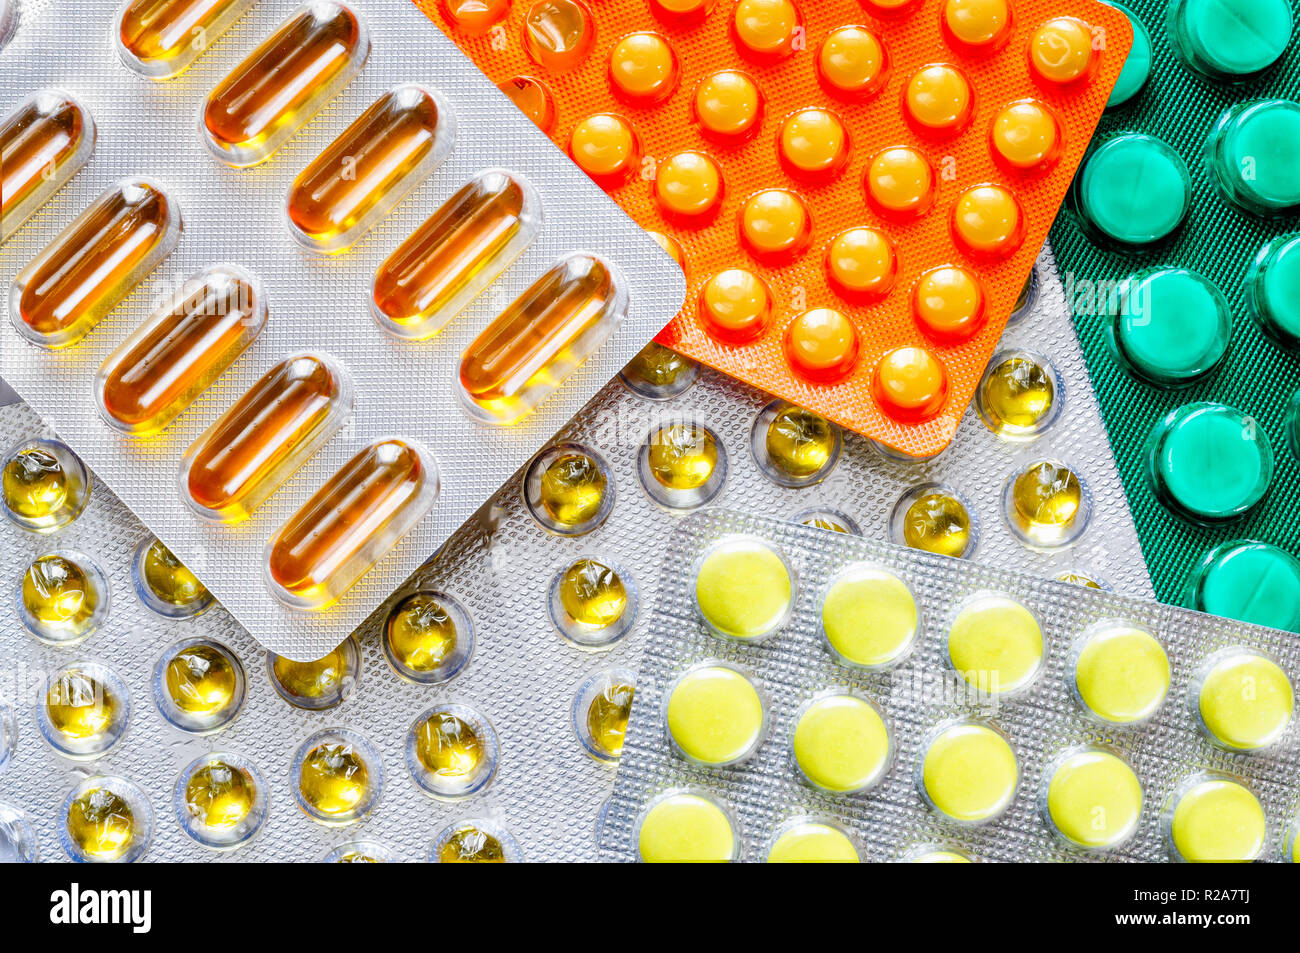 Pillole di alveoli di coloratissimi farmacia per curare il dolore e la malattia. Potrebbe essere utilizzato dai malati con la medicina delle tossicodipendenze Foto Stock